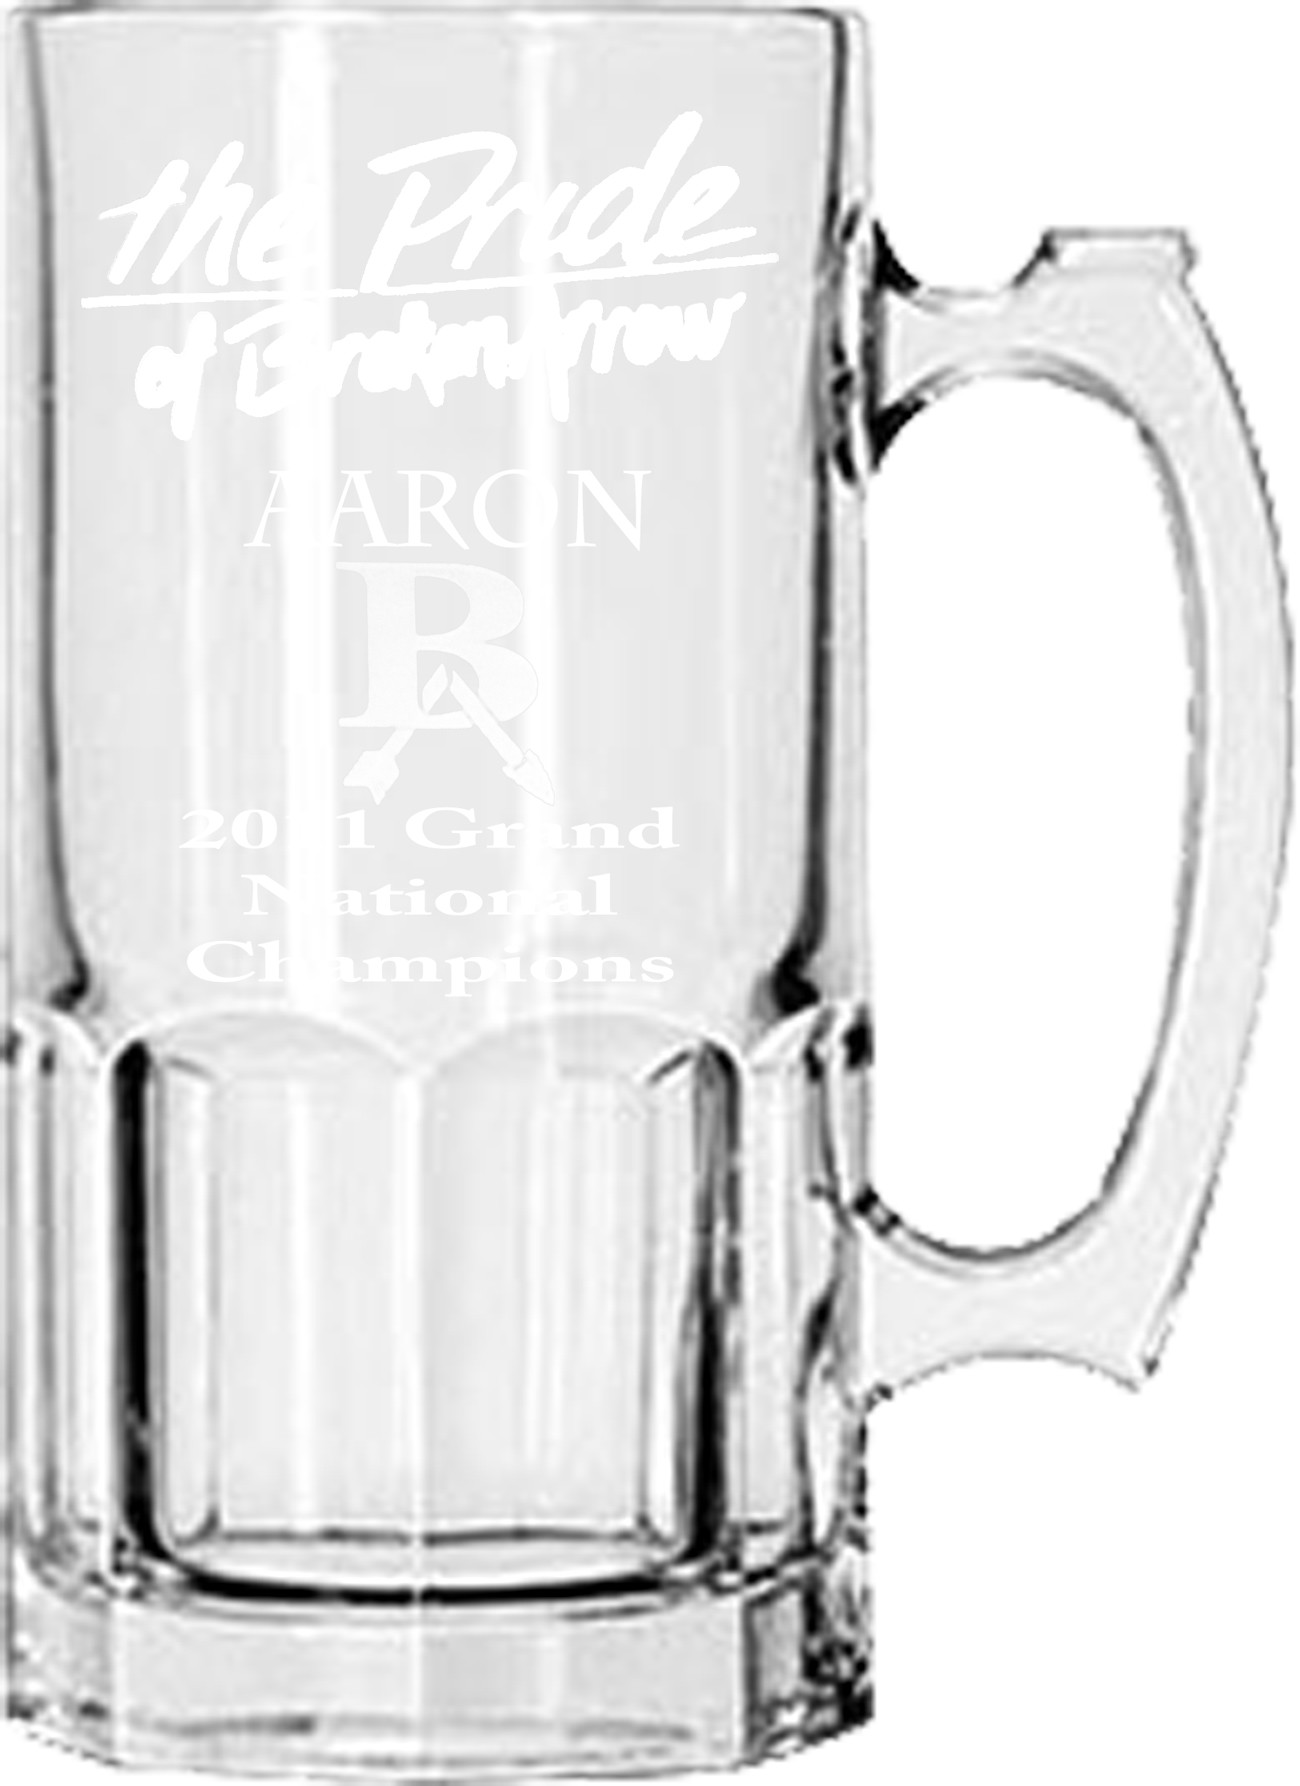 Glass Mug - HUGE 1 Liter, 32 oz. MUG - Personalized, Custom Engraved, Etched - Pride of Broken Arrow Grand National Champs